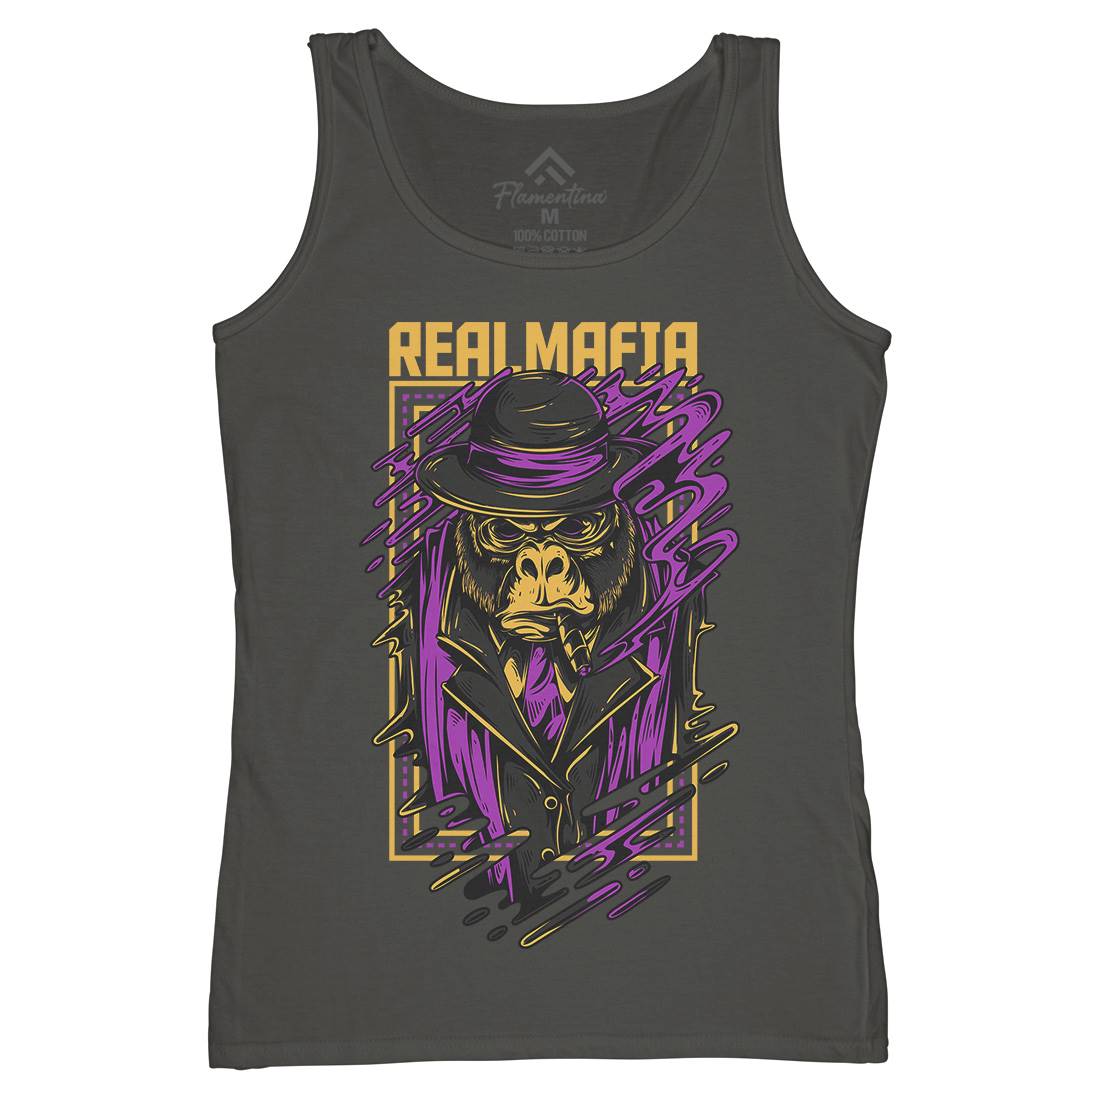 Real Mafia Womens Organic Tank Top Vest animals D690